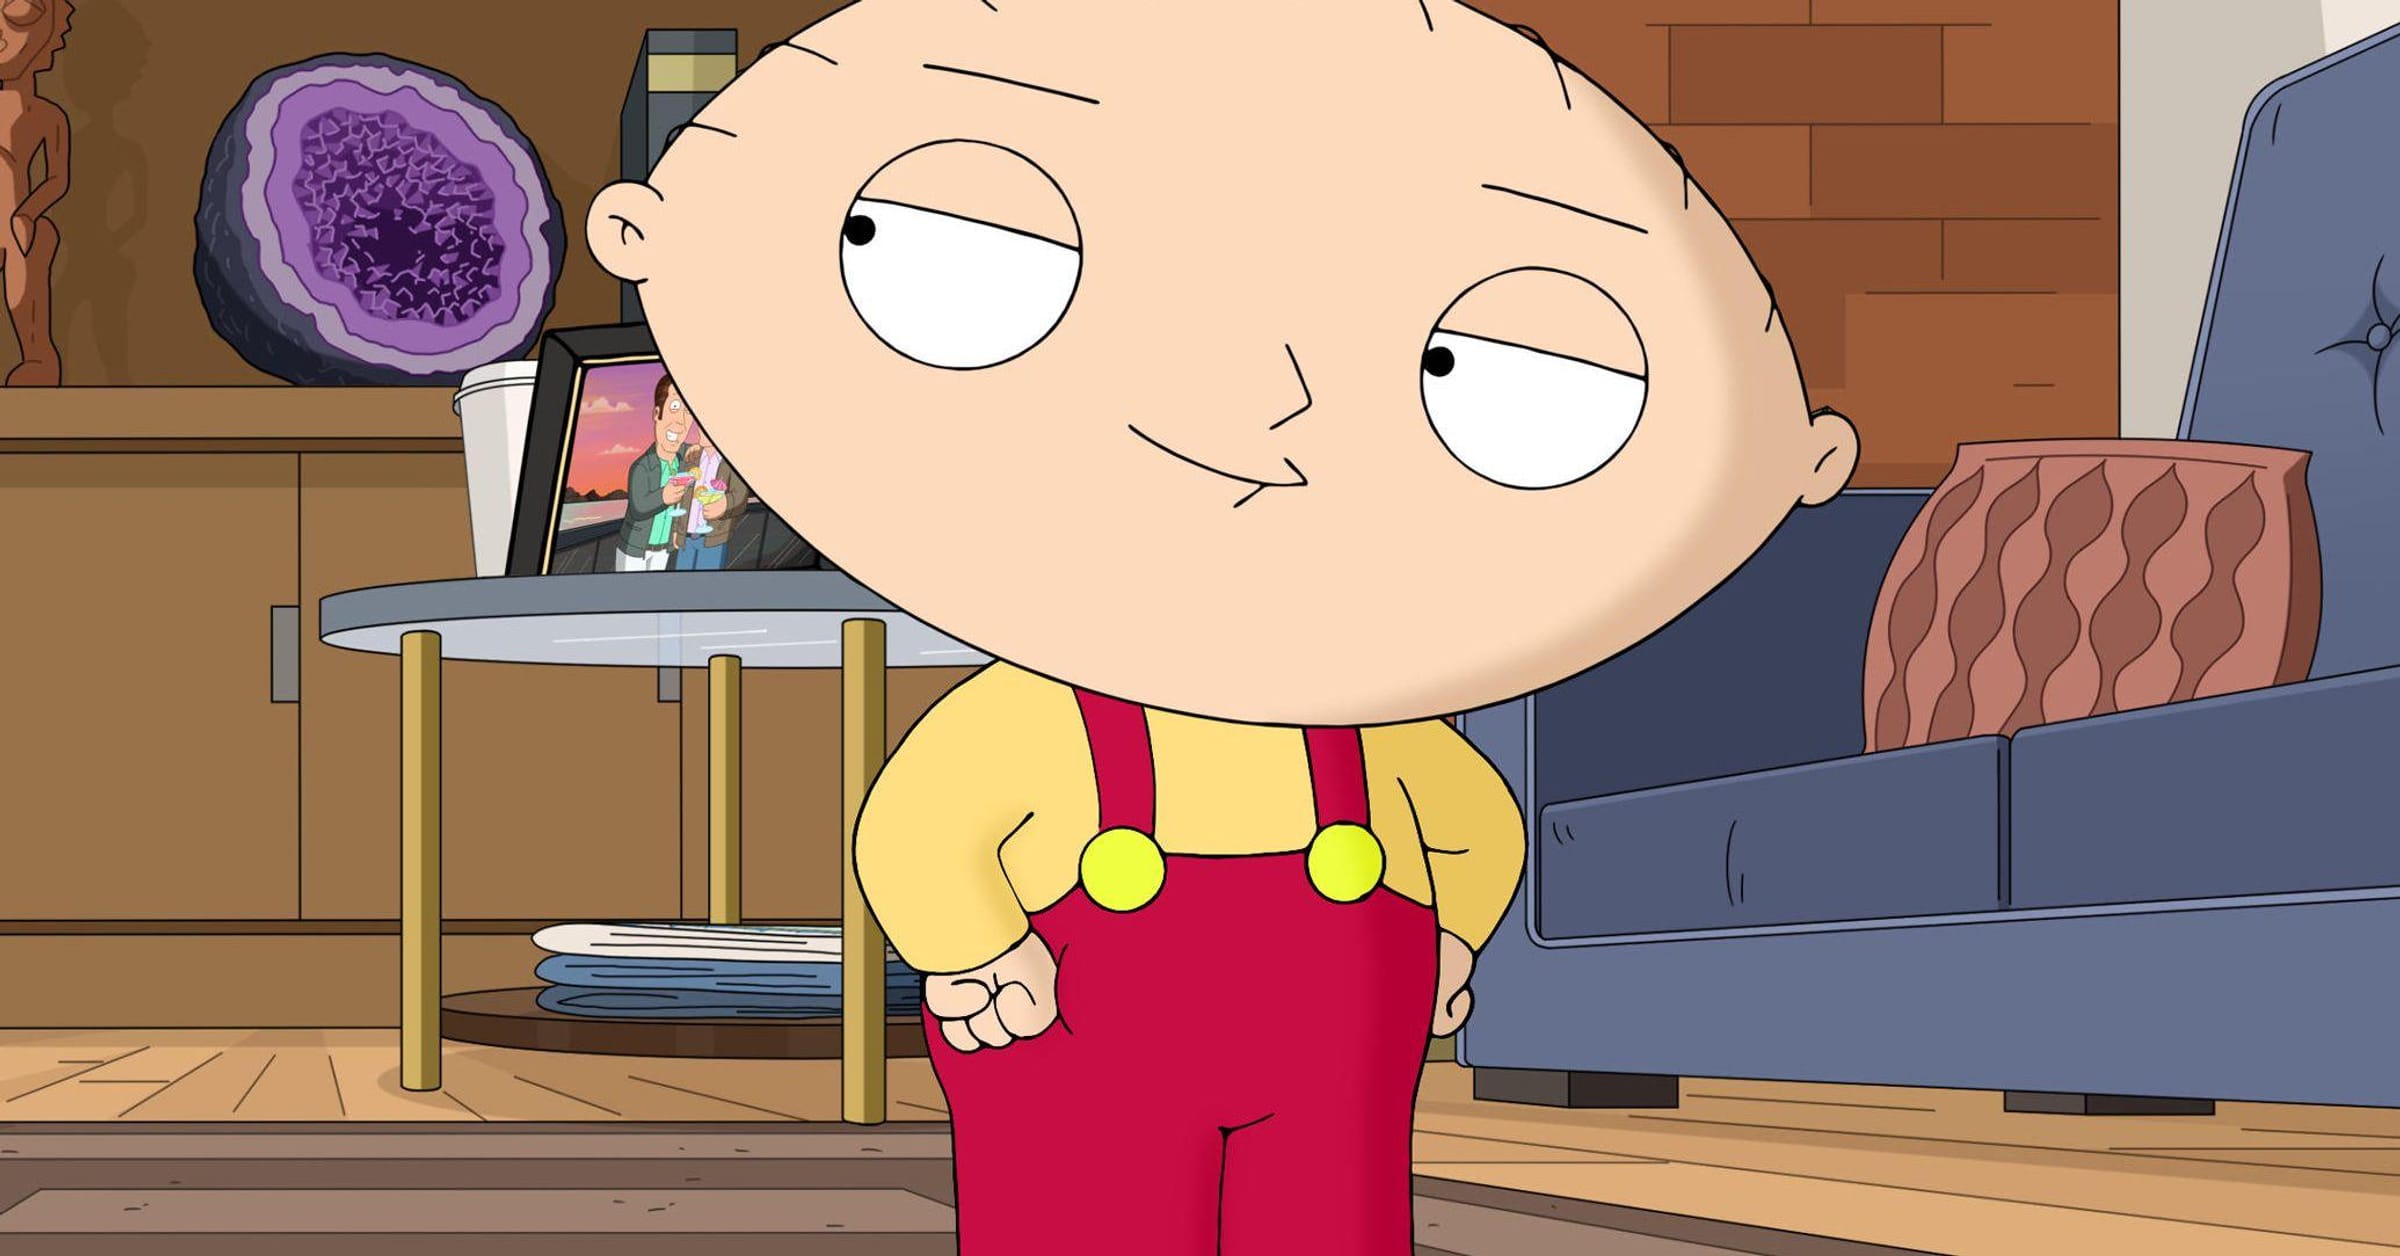 Family Guy-Episódios completos